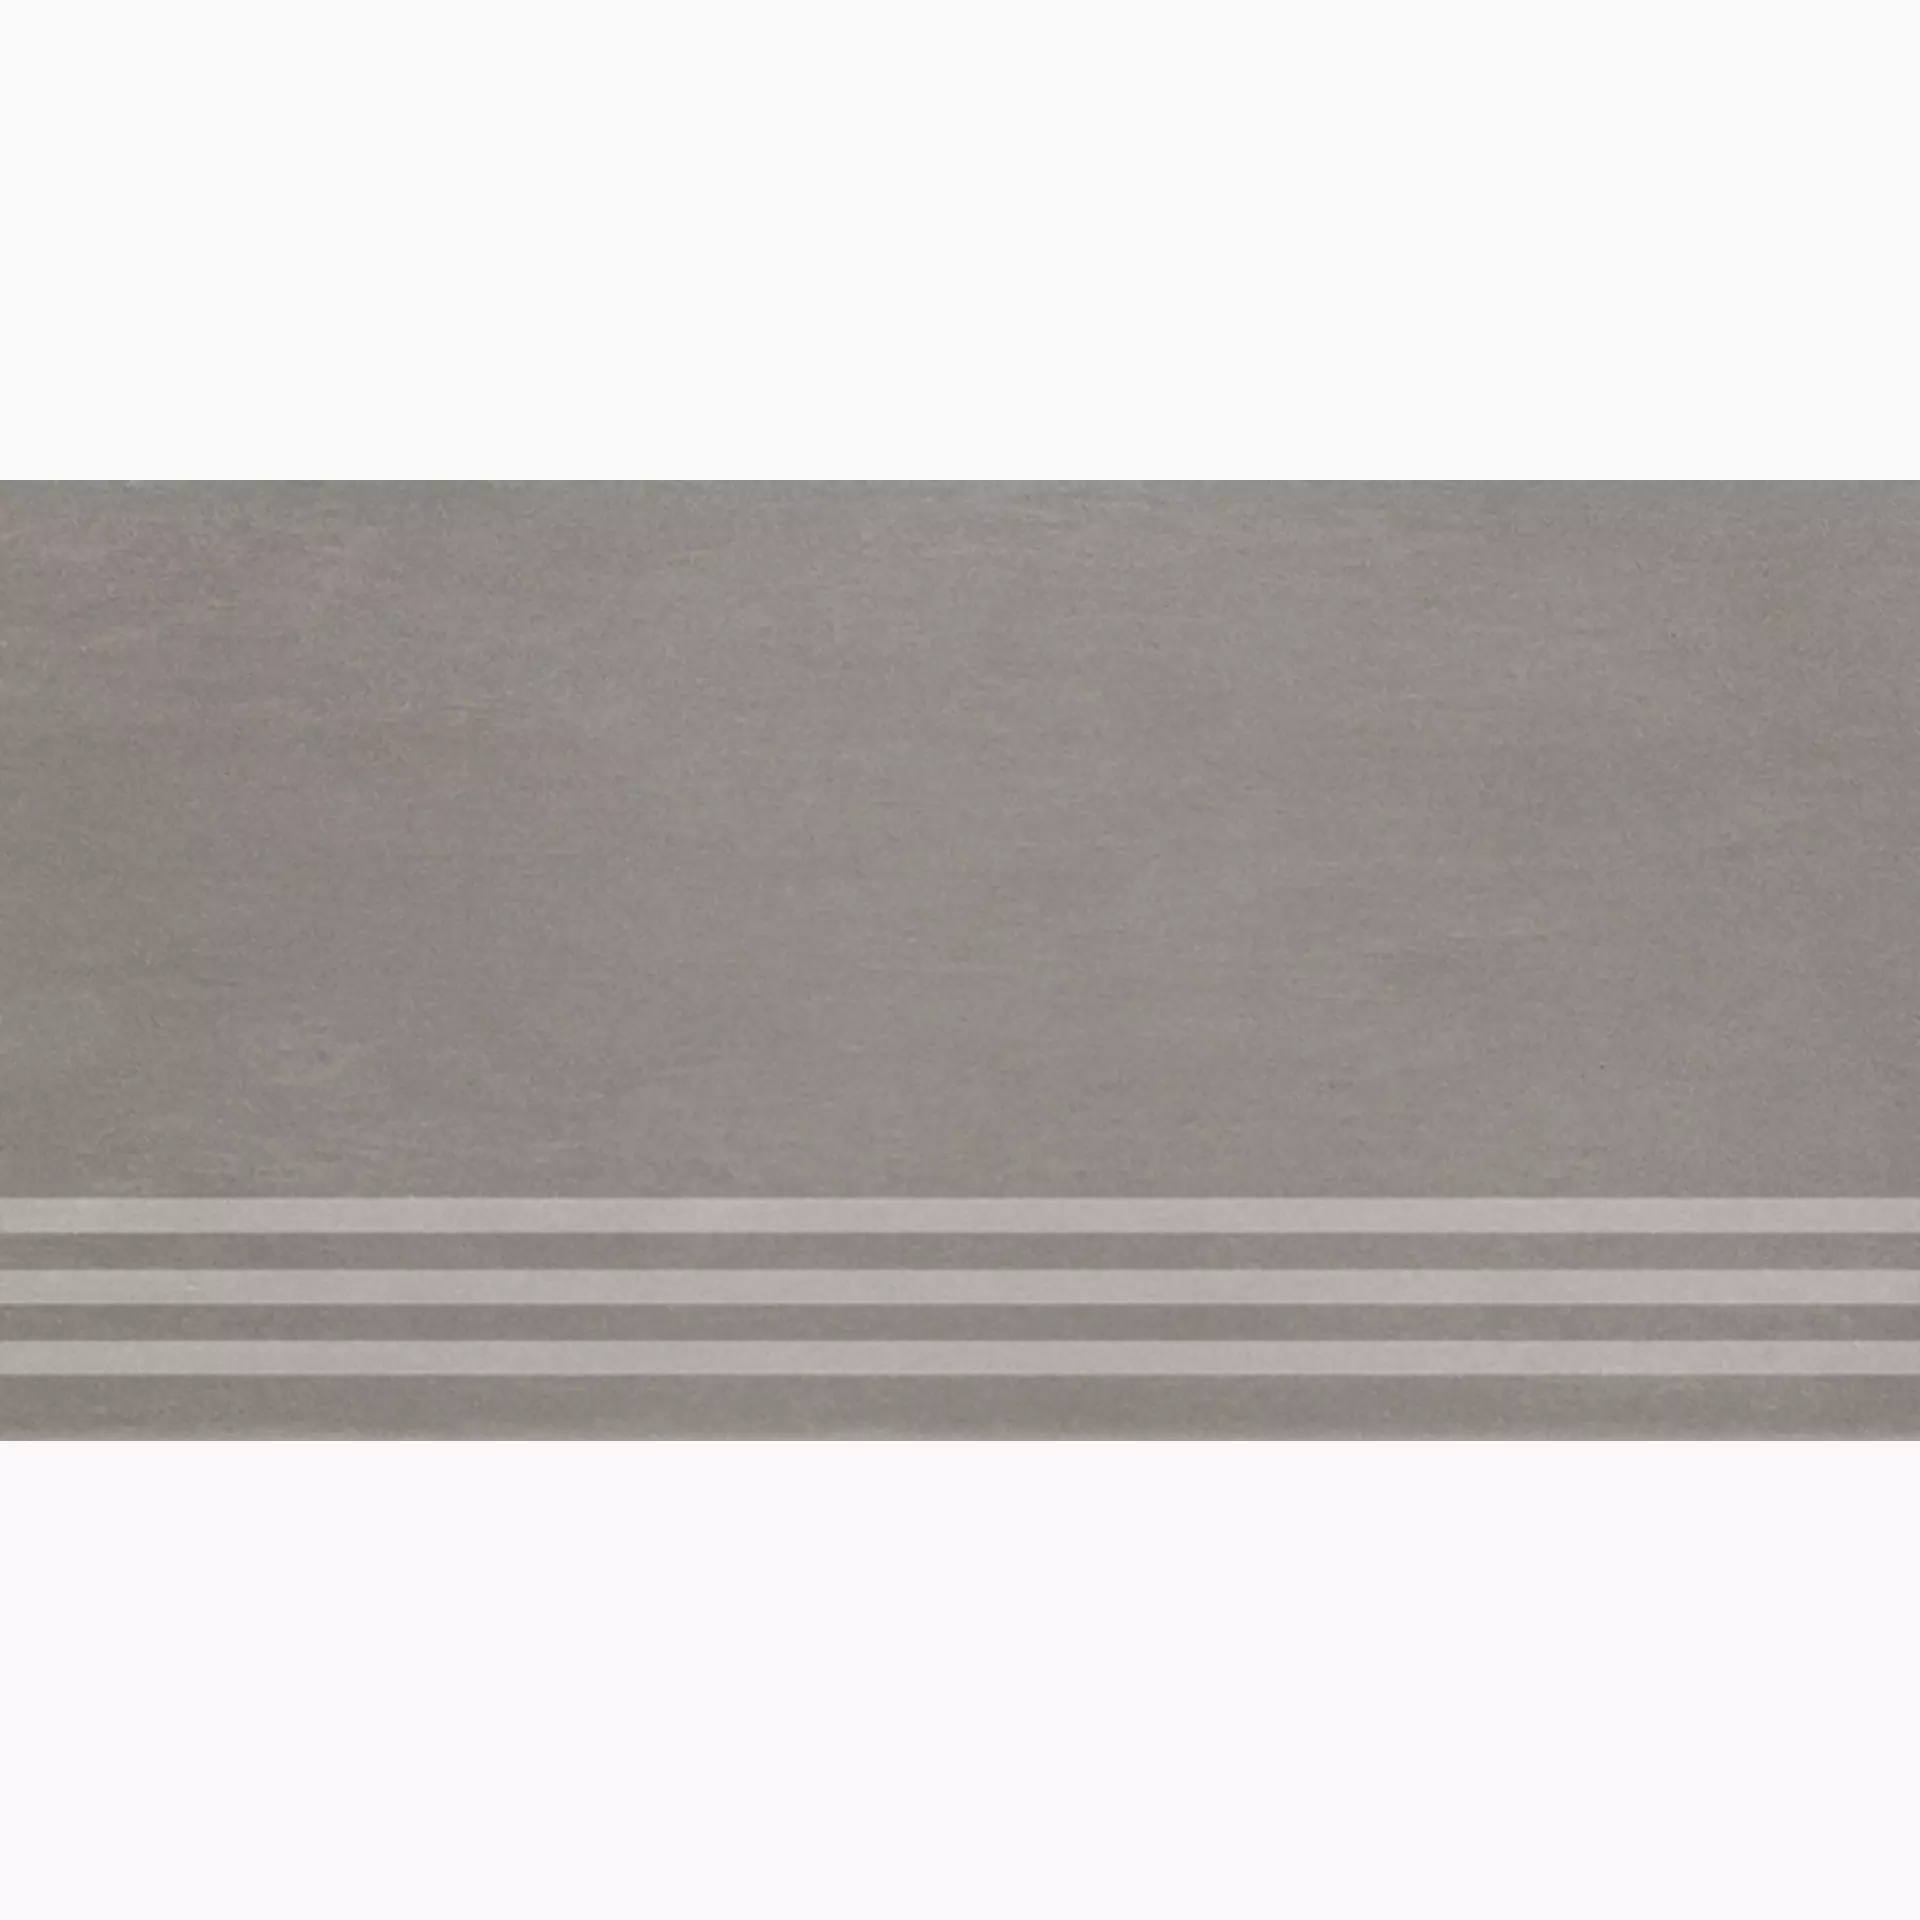 Villeroy & Boch Unit Four Medium Grey Matt Stair plate 2874-CT61 30x60cm rectified 10mm